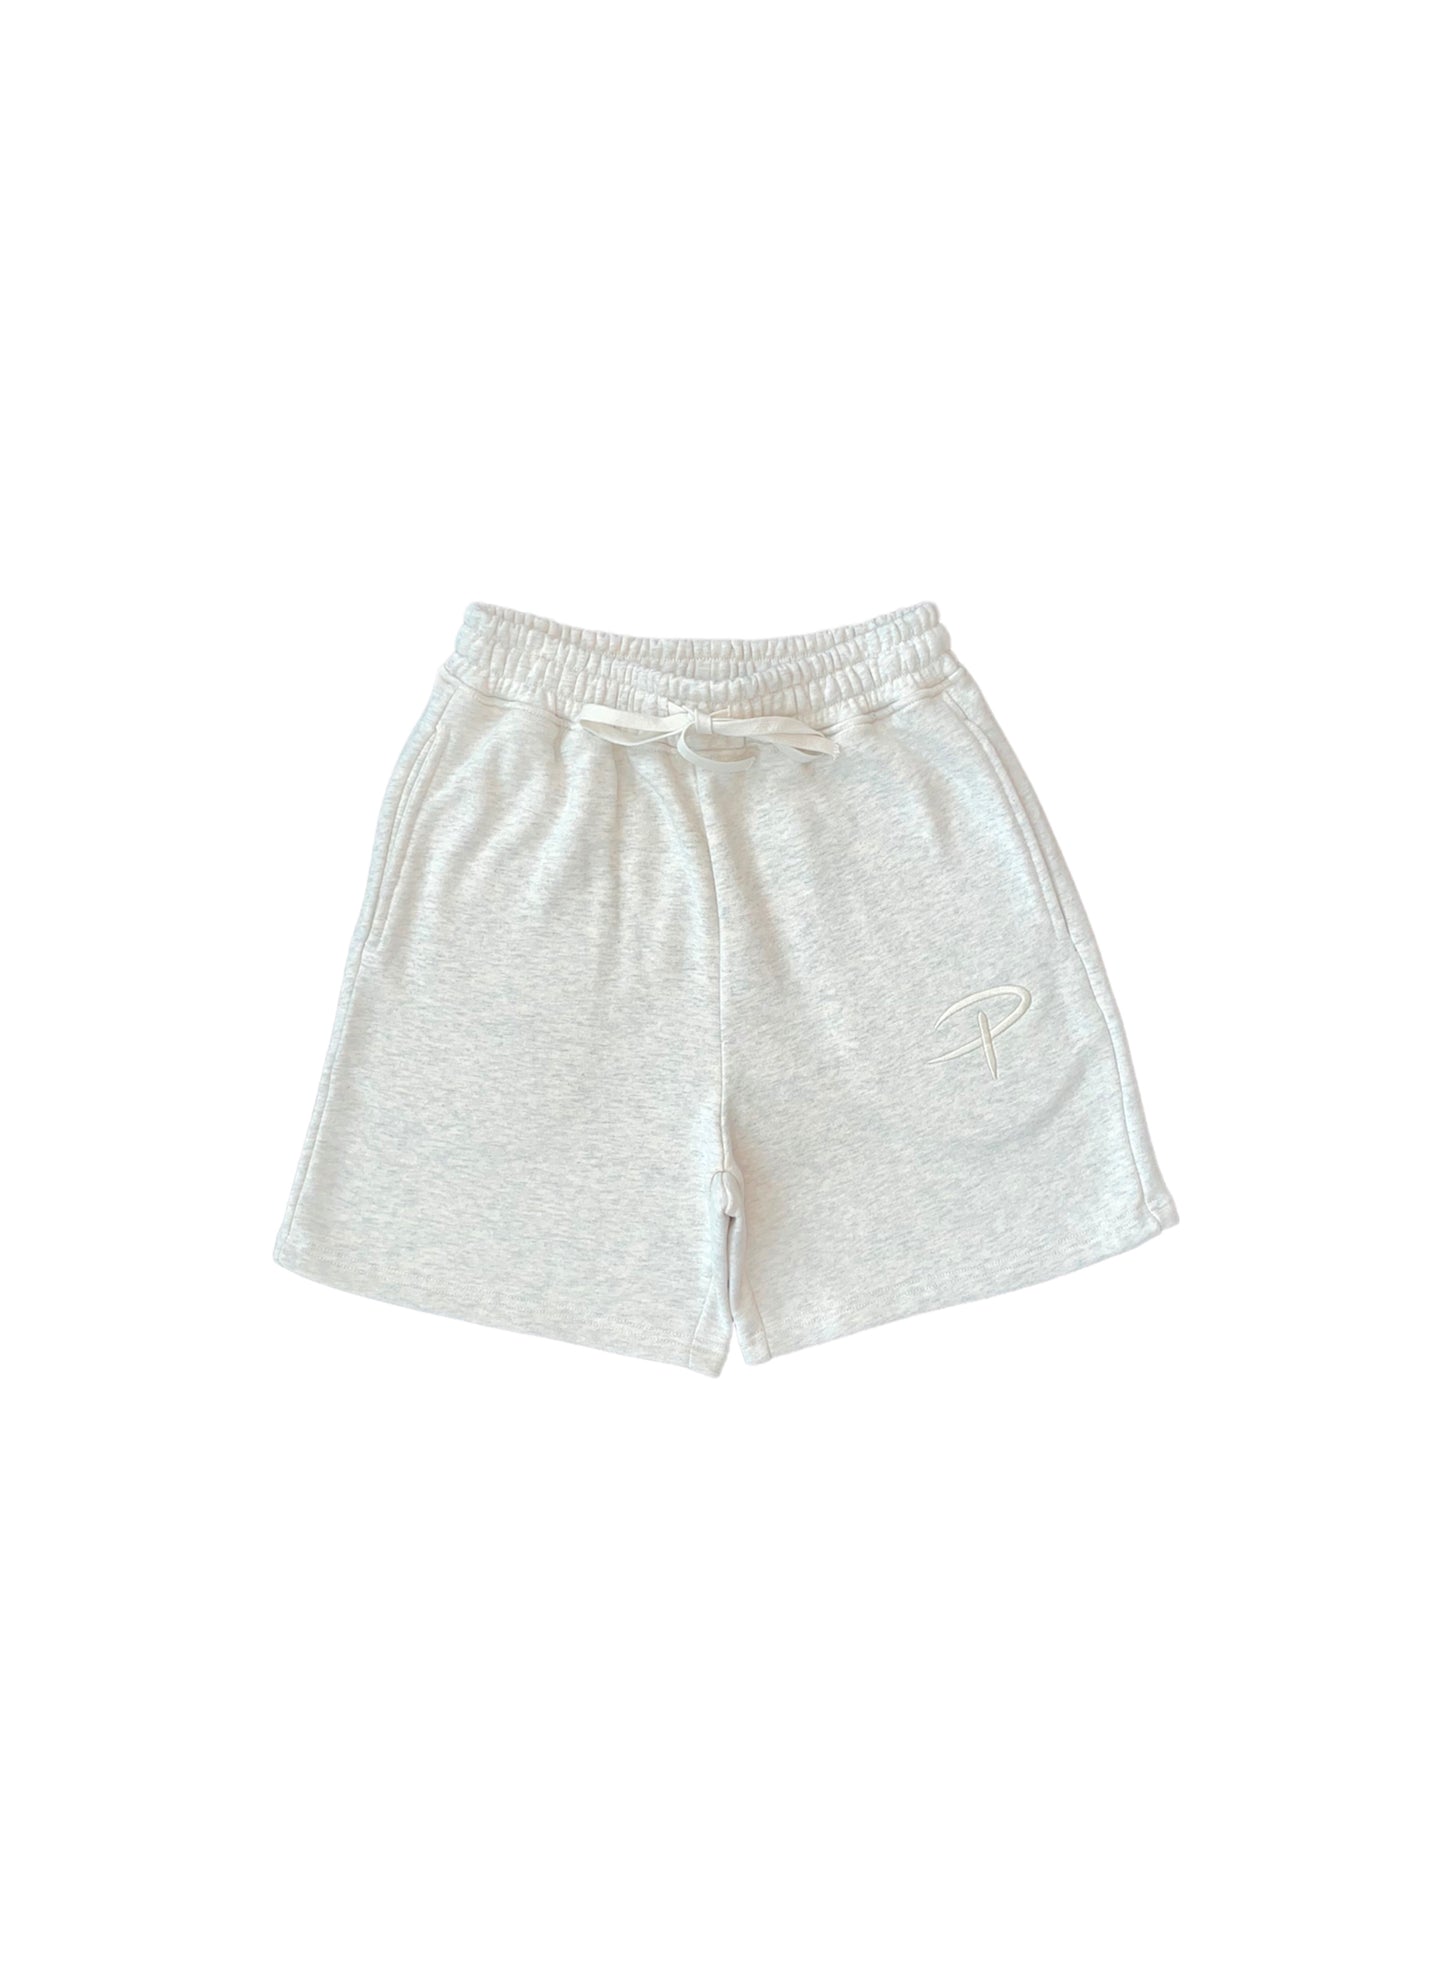 Monochrome Shorts (Grey)